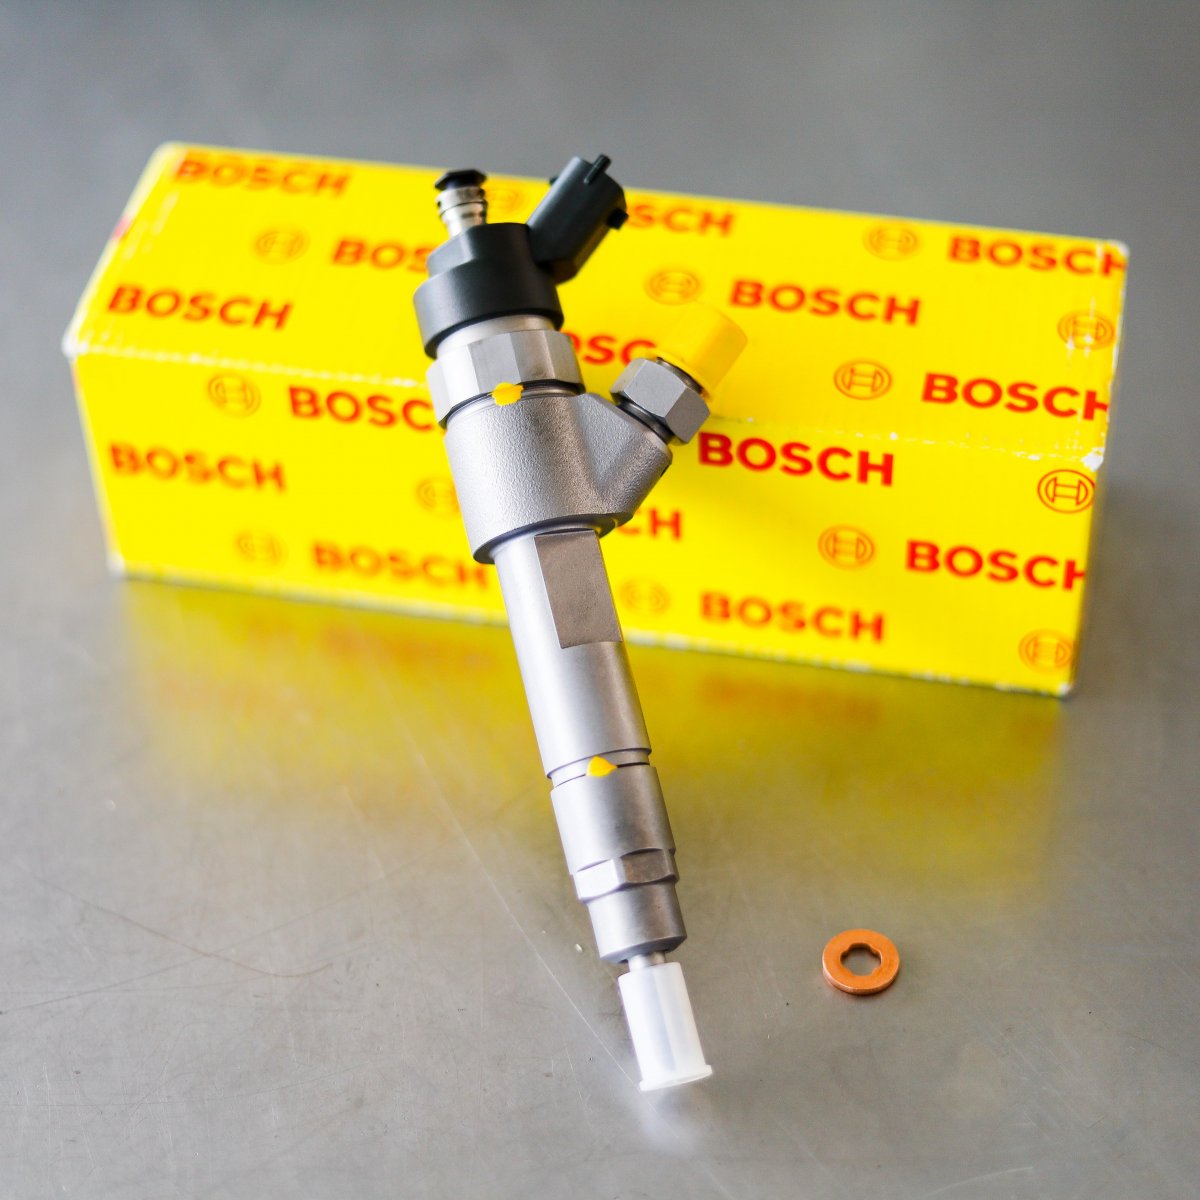 Wtryskiwacz Bosch po naprawie gotowy do nadania do Klienta z gwarancją na 2 lata w dobrej cenie